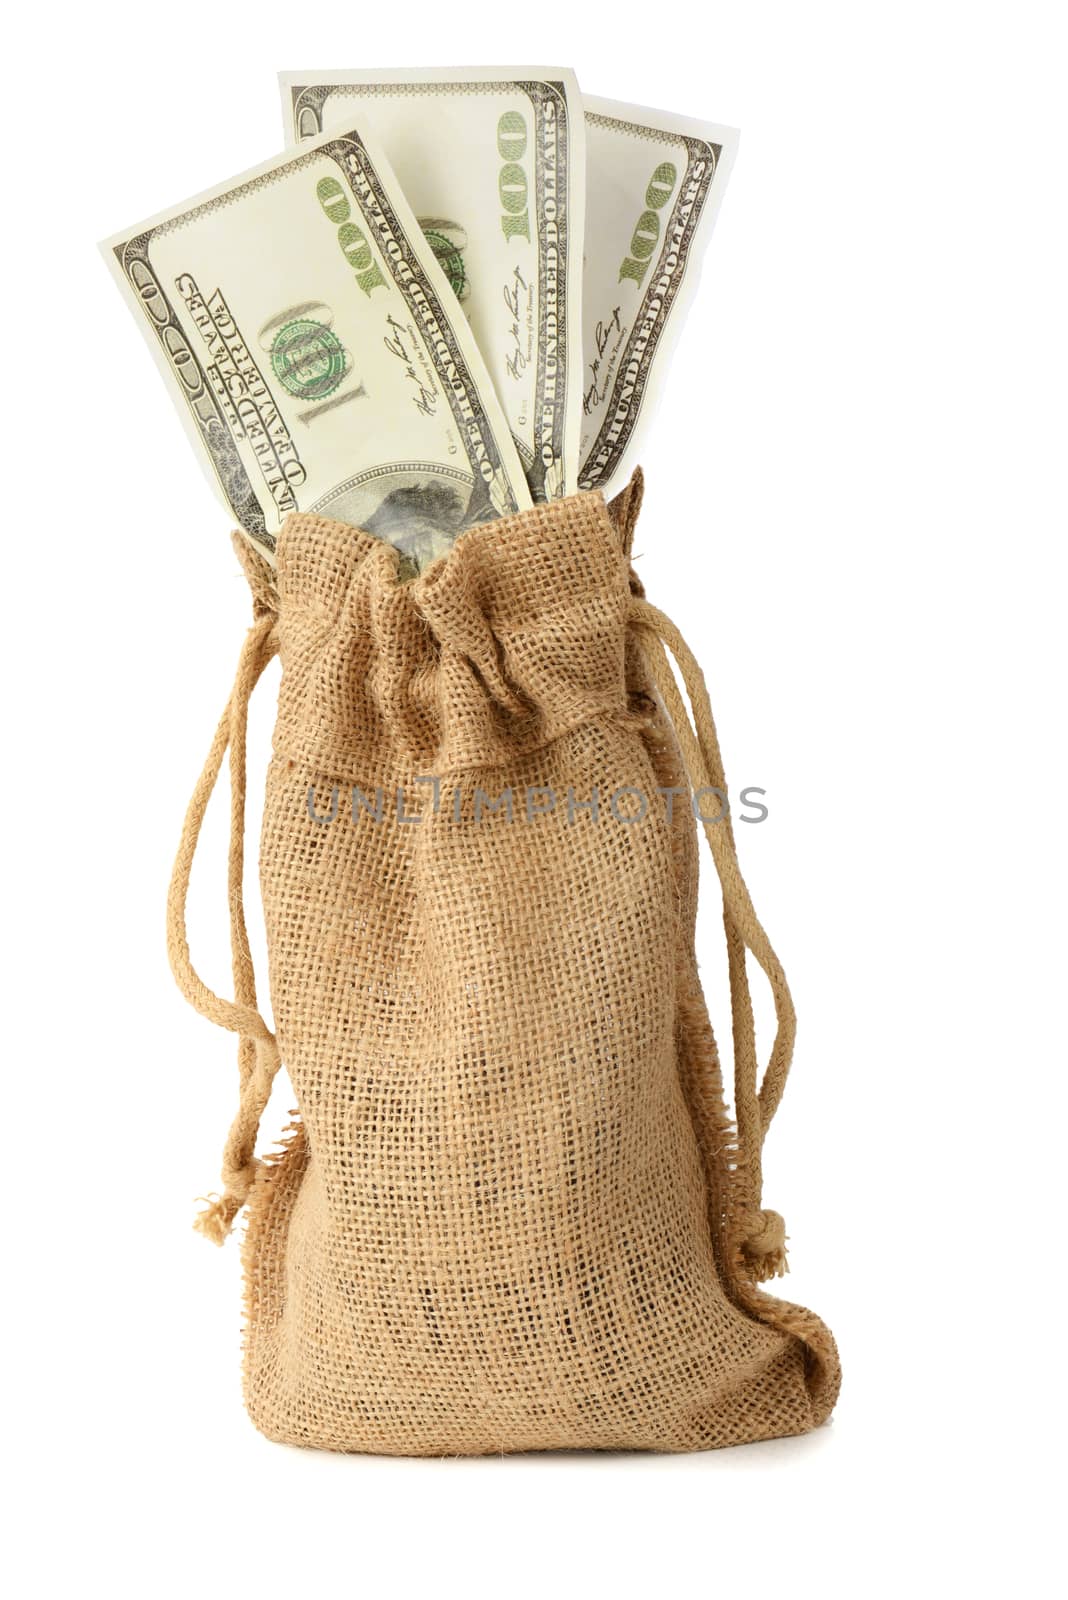 bag full of money by hyrons